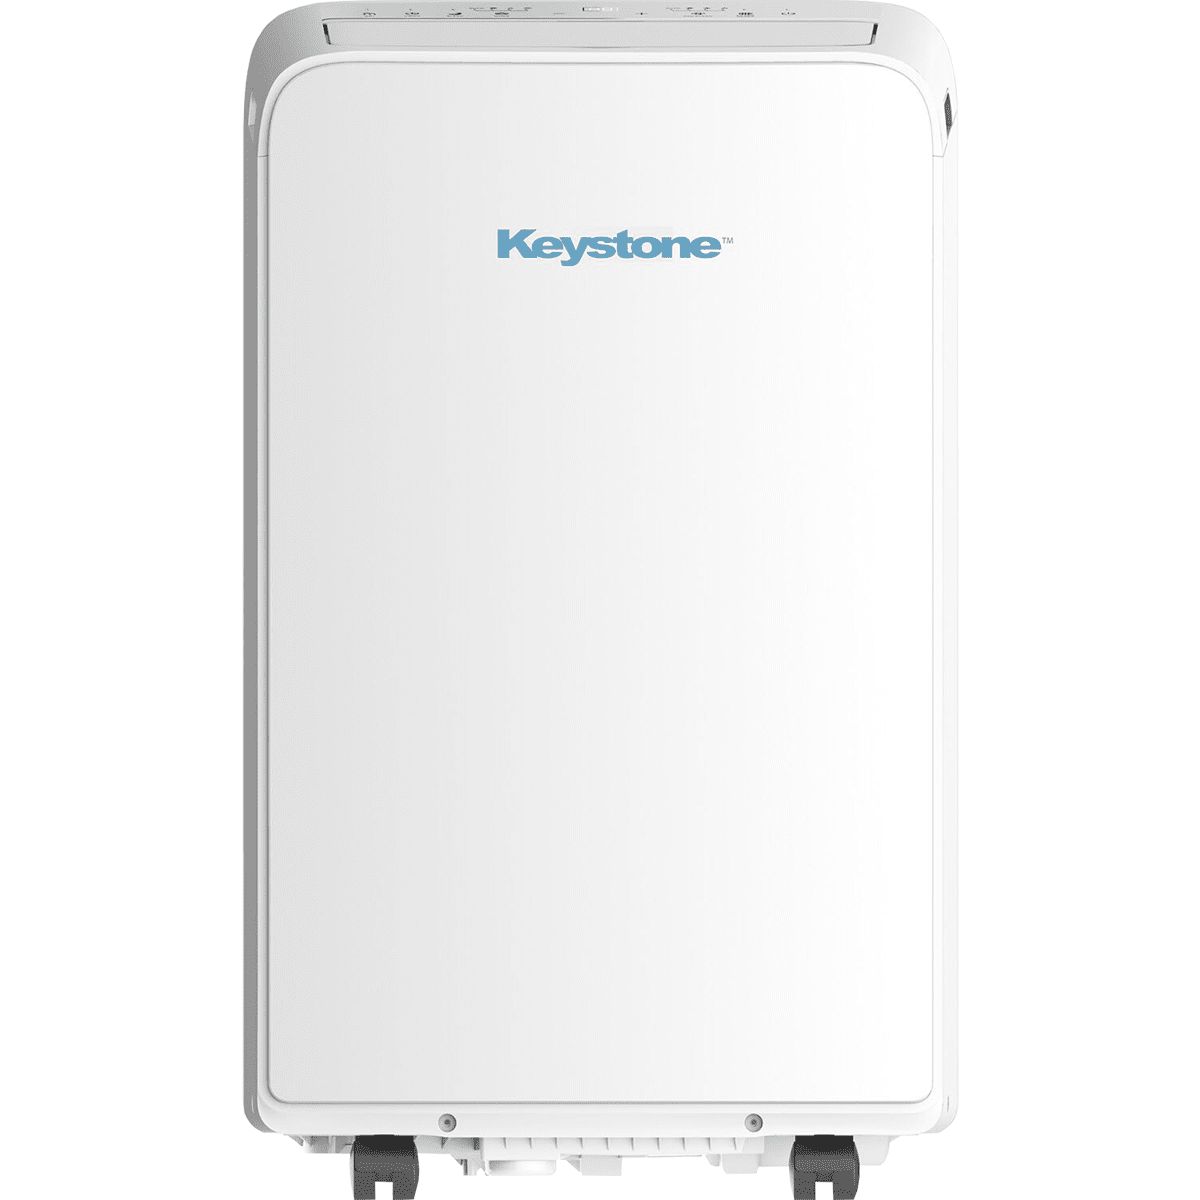 Keystone 13,000 BTU Portable Air Conditioner w/ Heat